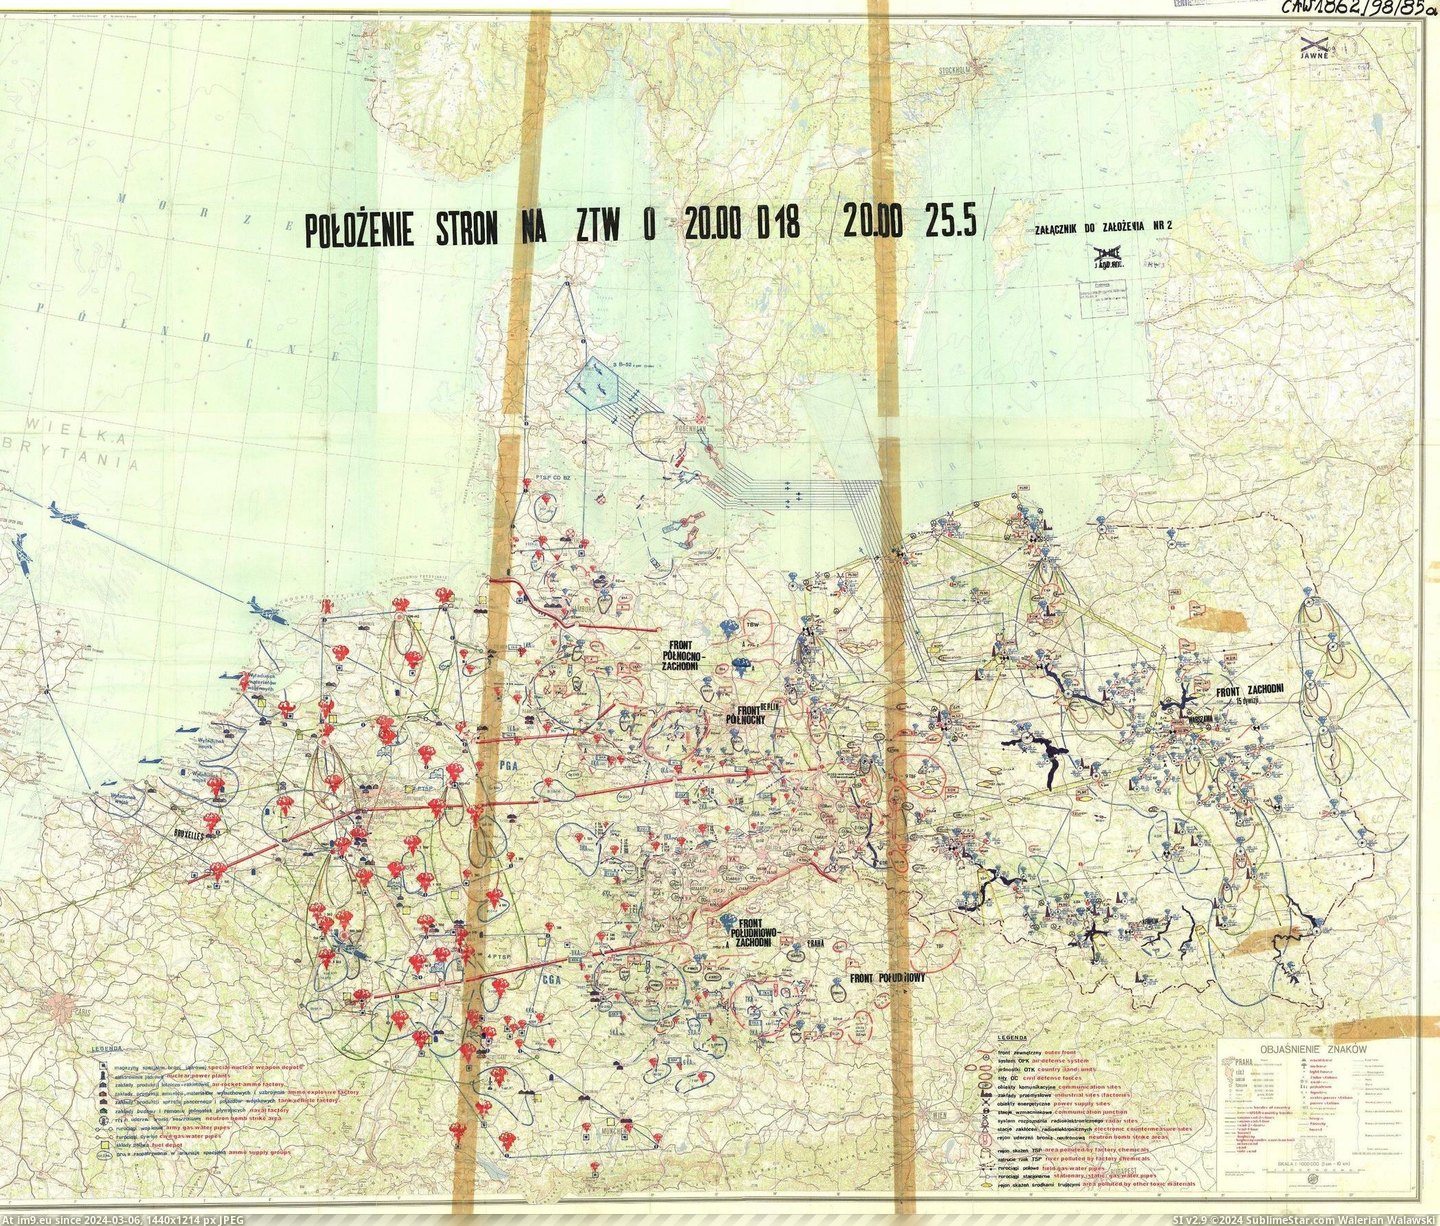 #World #War #Strike #Nuclear #Nato #Iii #Plan [Mapporn] USSR world war III nuclear strike plan on NATO [2100x1783] Pic. (Bild von album My r/MAPS favs))